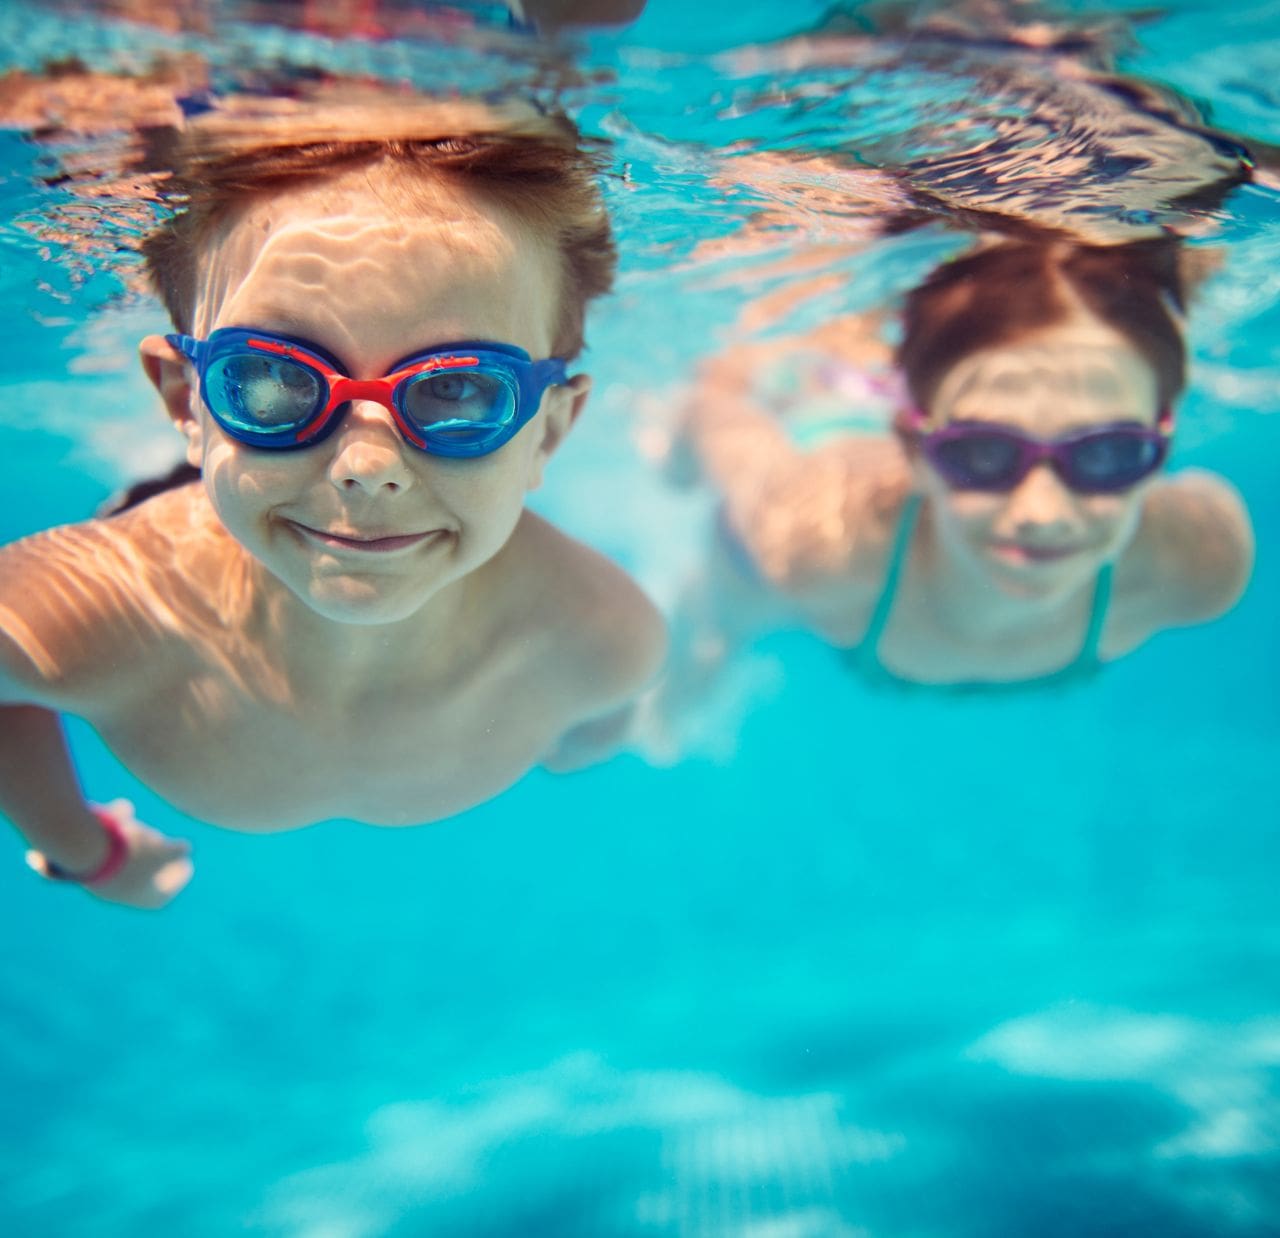 2 children swim underwater with goggles